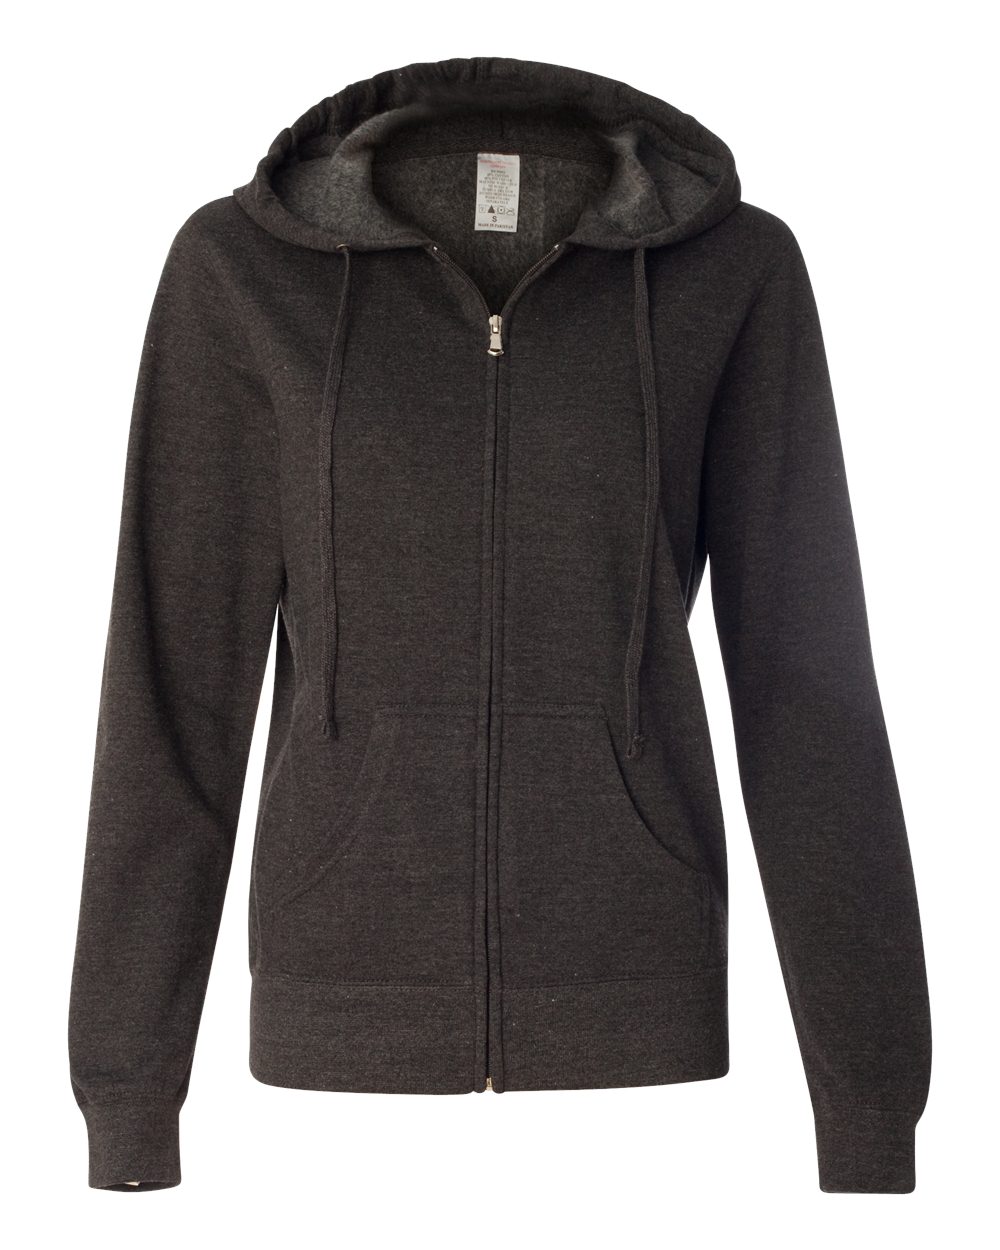 Juniors’ Heavenly Fleece Full-Zip Hooded Sweatshirt - SS650Z